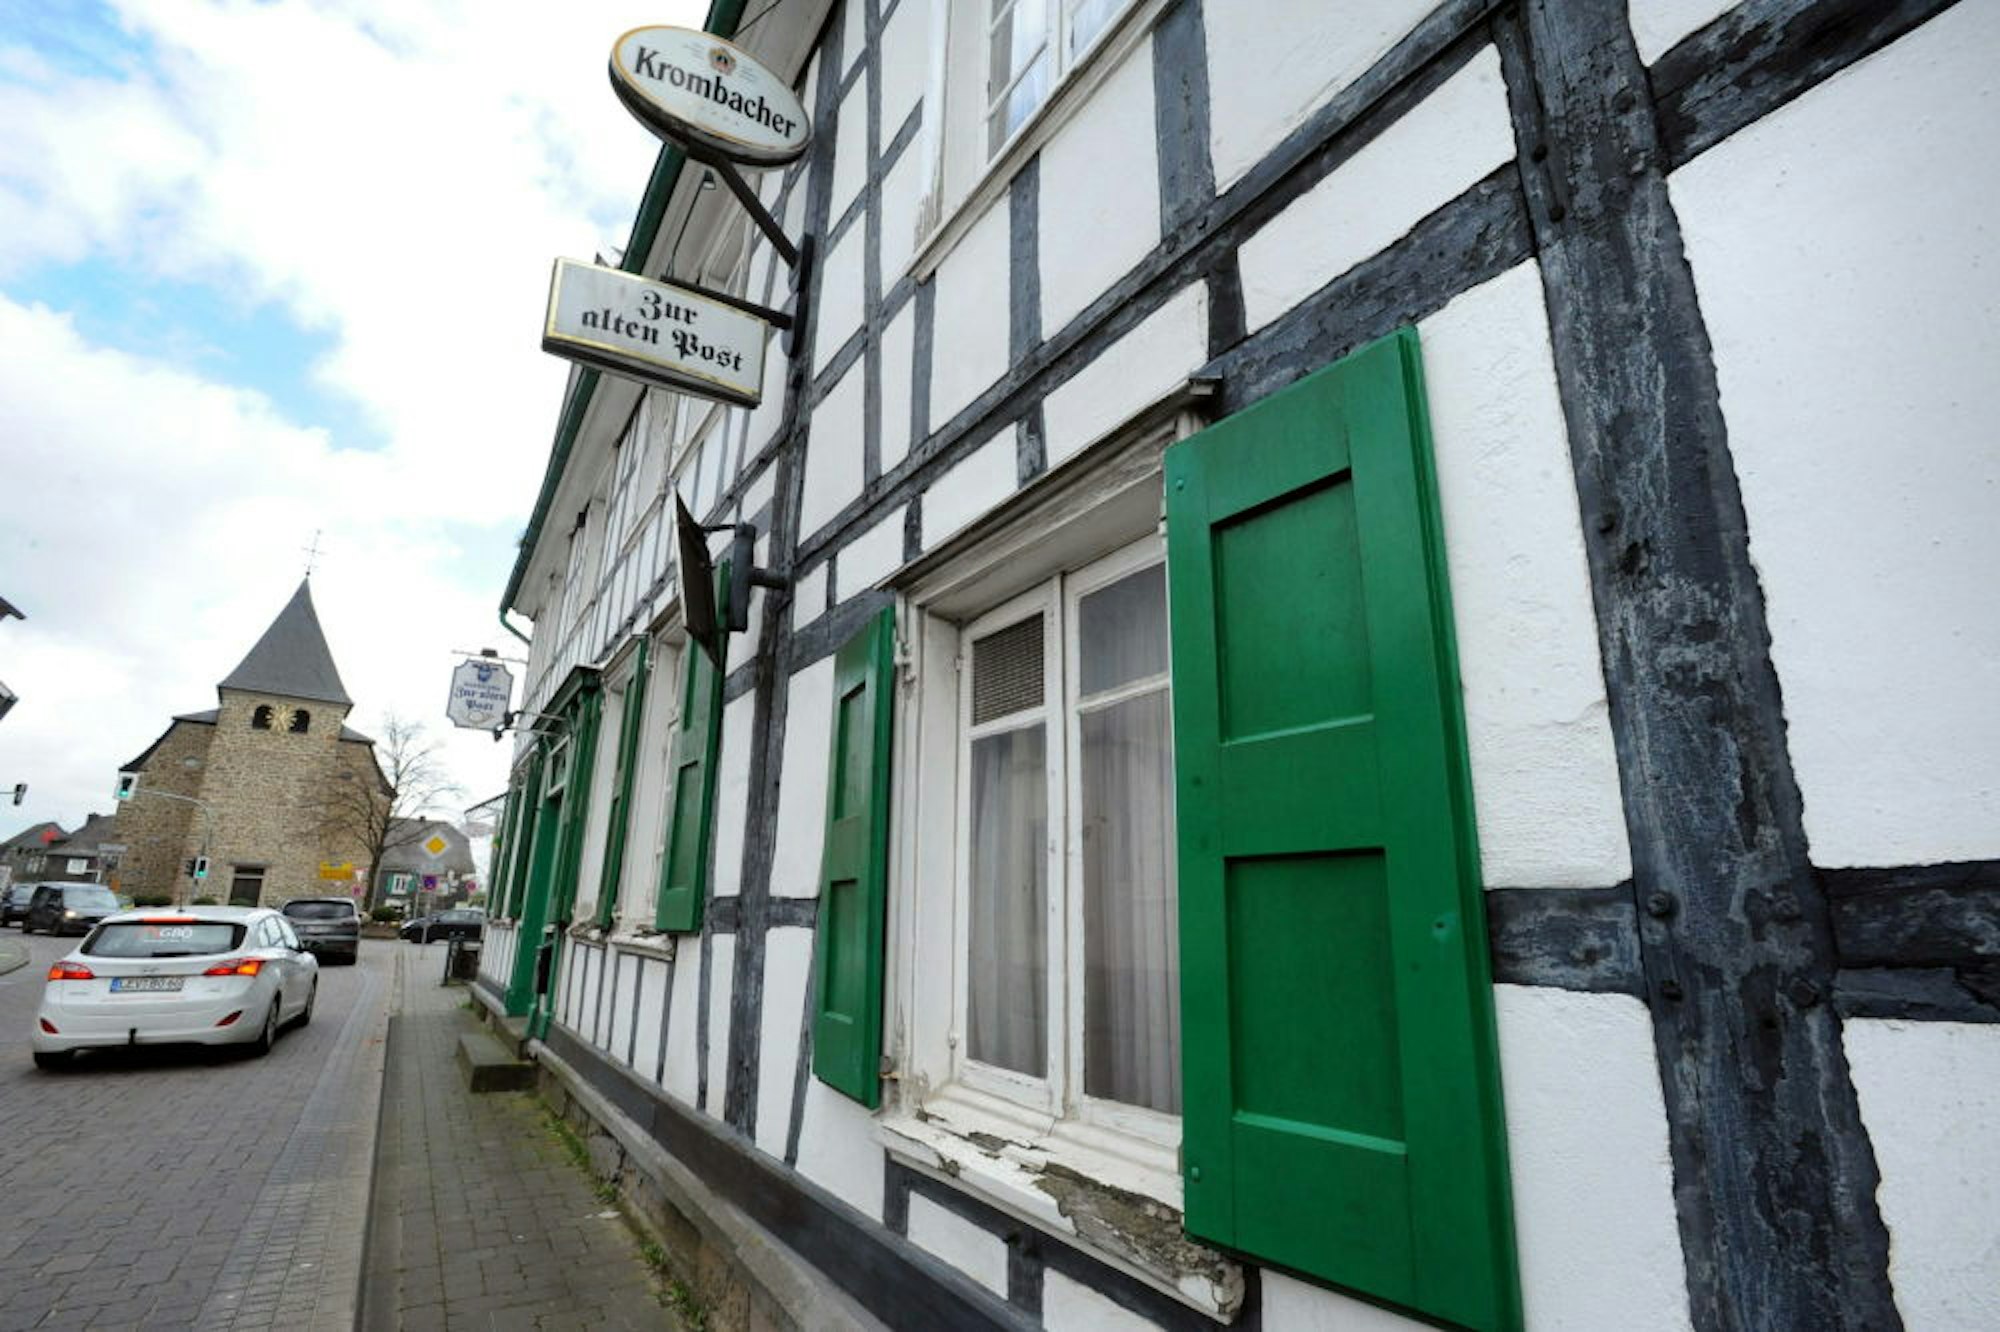 Die Brauerei-Werbung und das Wirtshaus-Schild künden noch von der Geschichte des Gebäudes in der Nähe des Marktplatzes.